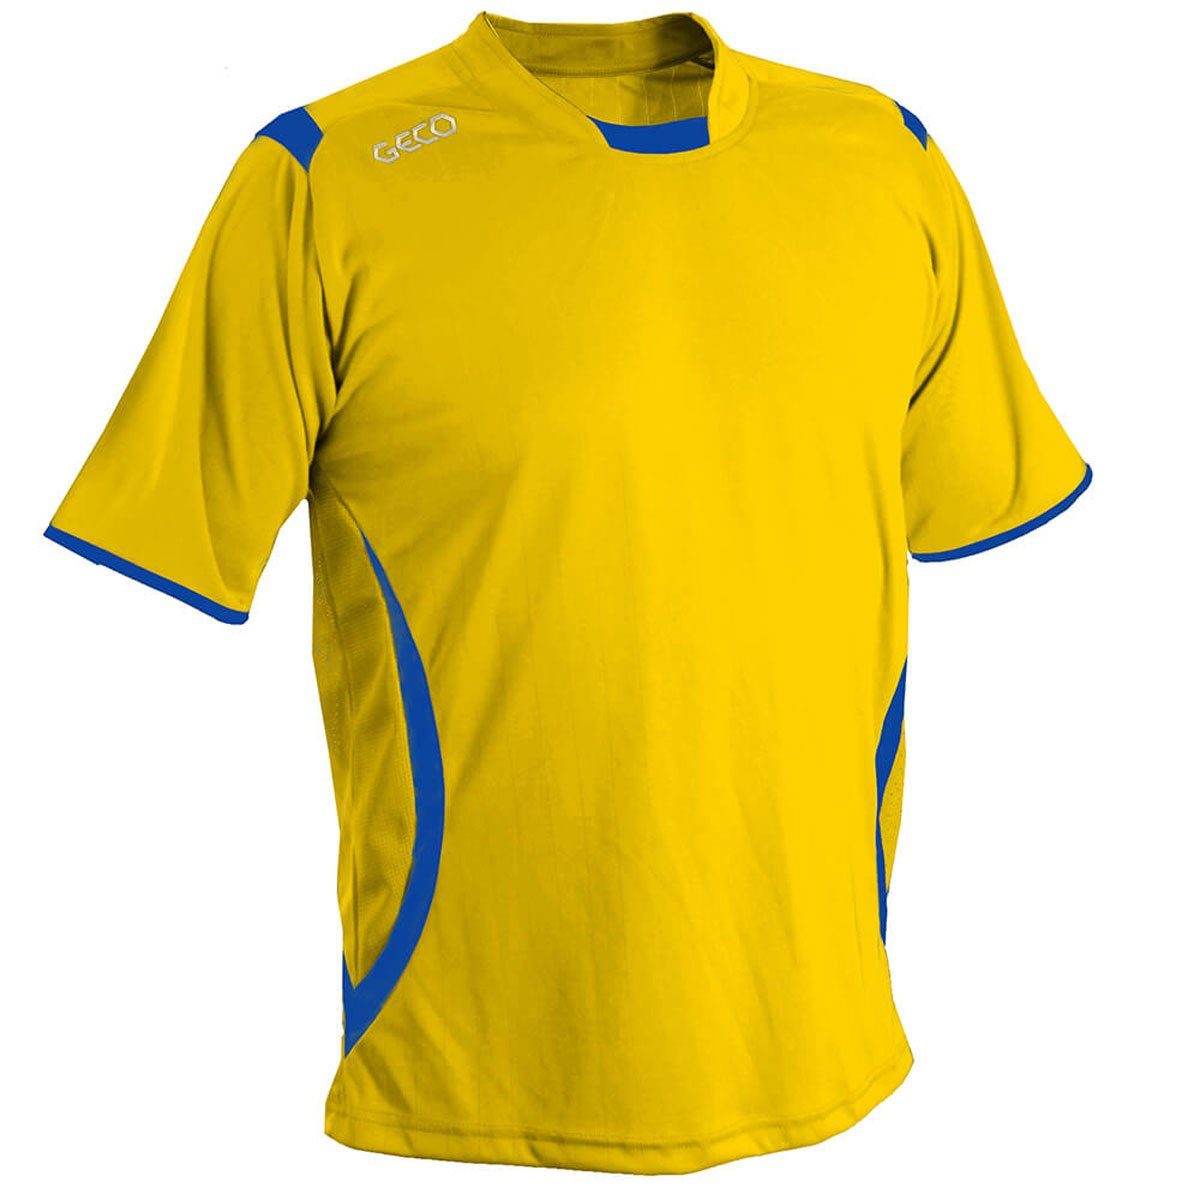 Fußballtrikot Geco Sportswear Trikot seitliche Levante Fußballtrikot zweifarbig Mesheinsätze gelb/blau Fußball kurzarm